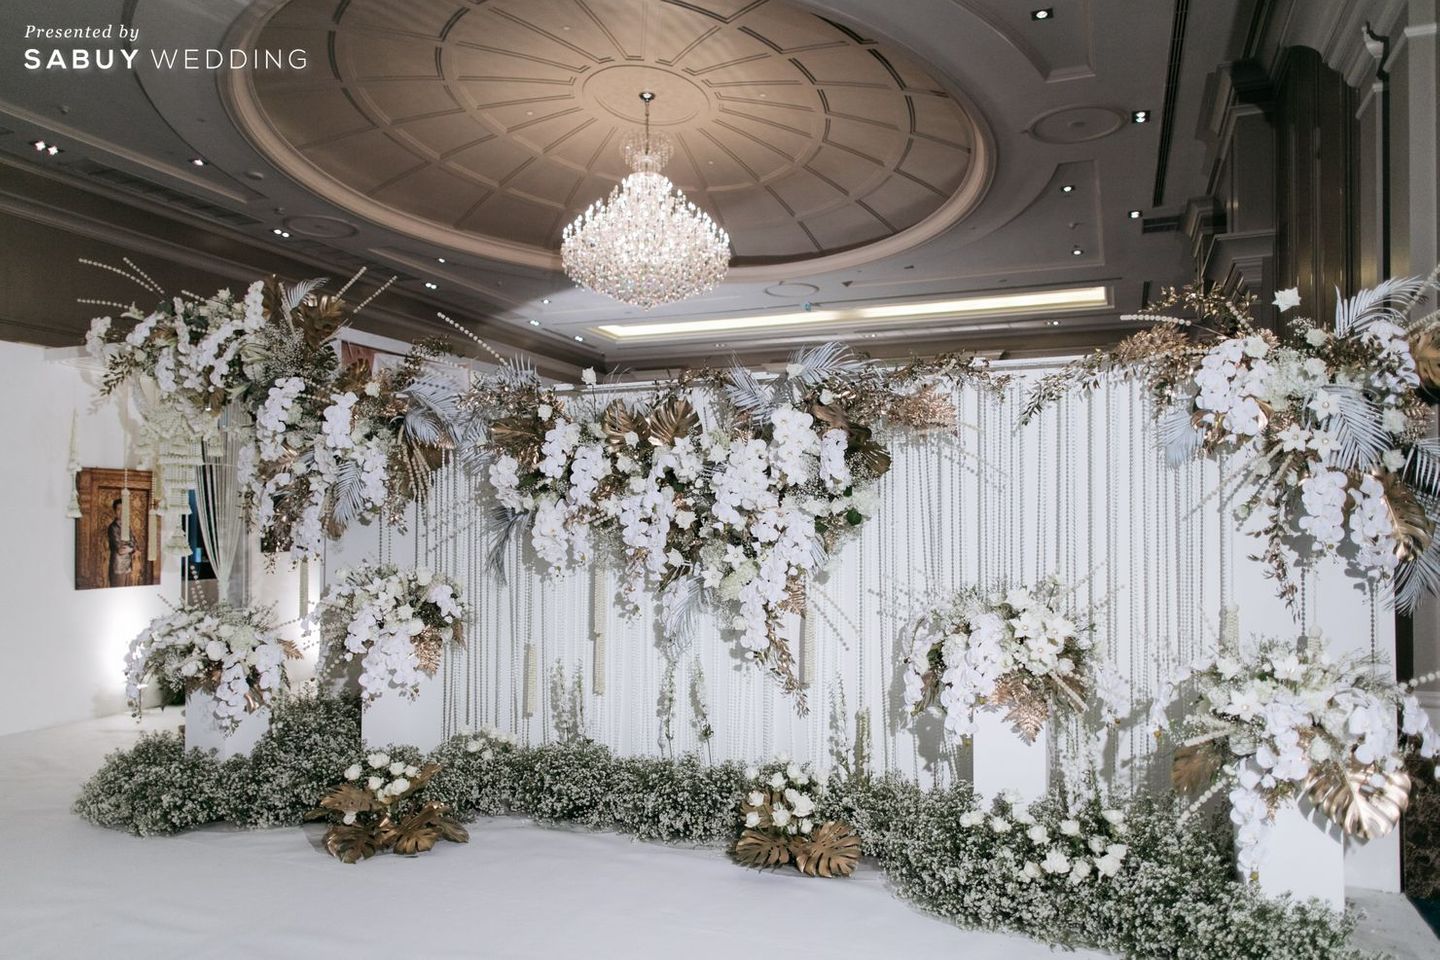 สถานที่แต่งงาน,ตกแต่งงานแต่ง,weddingplanner รีวิวงานแต่งไทยประยุกต์ สวยคลาสสิกด้วยโทนขาวทอง @ The Berkeley Hotel Pratunam